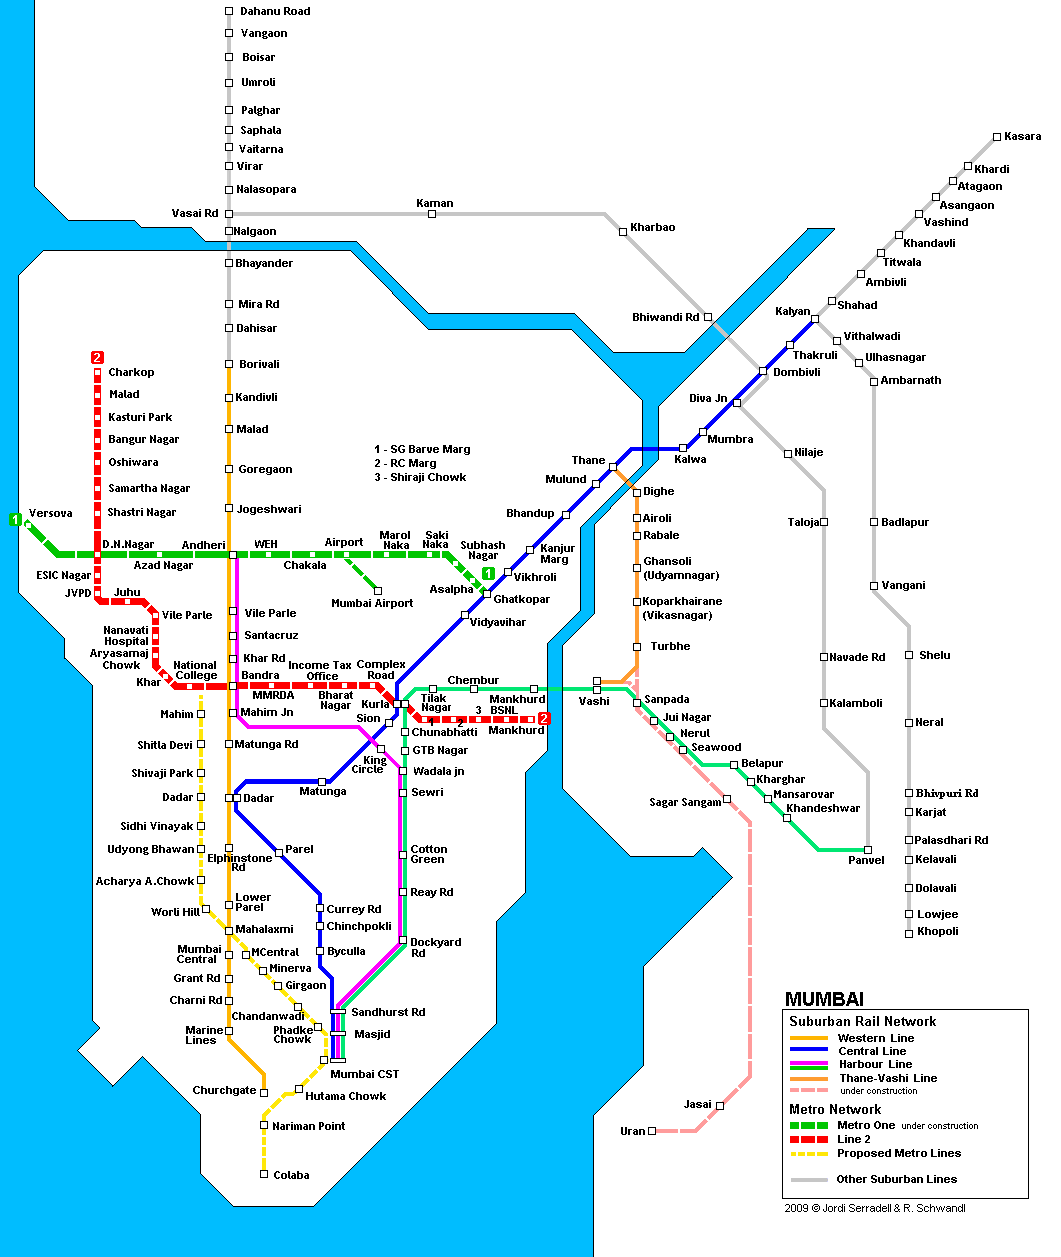 mumbai map